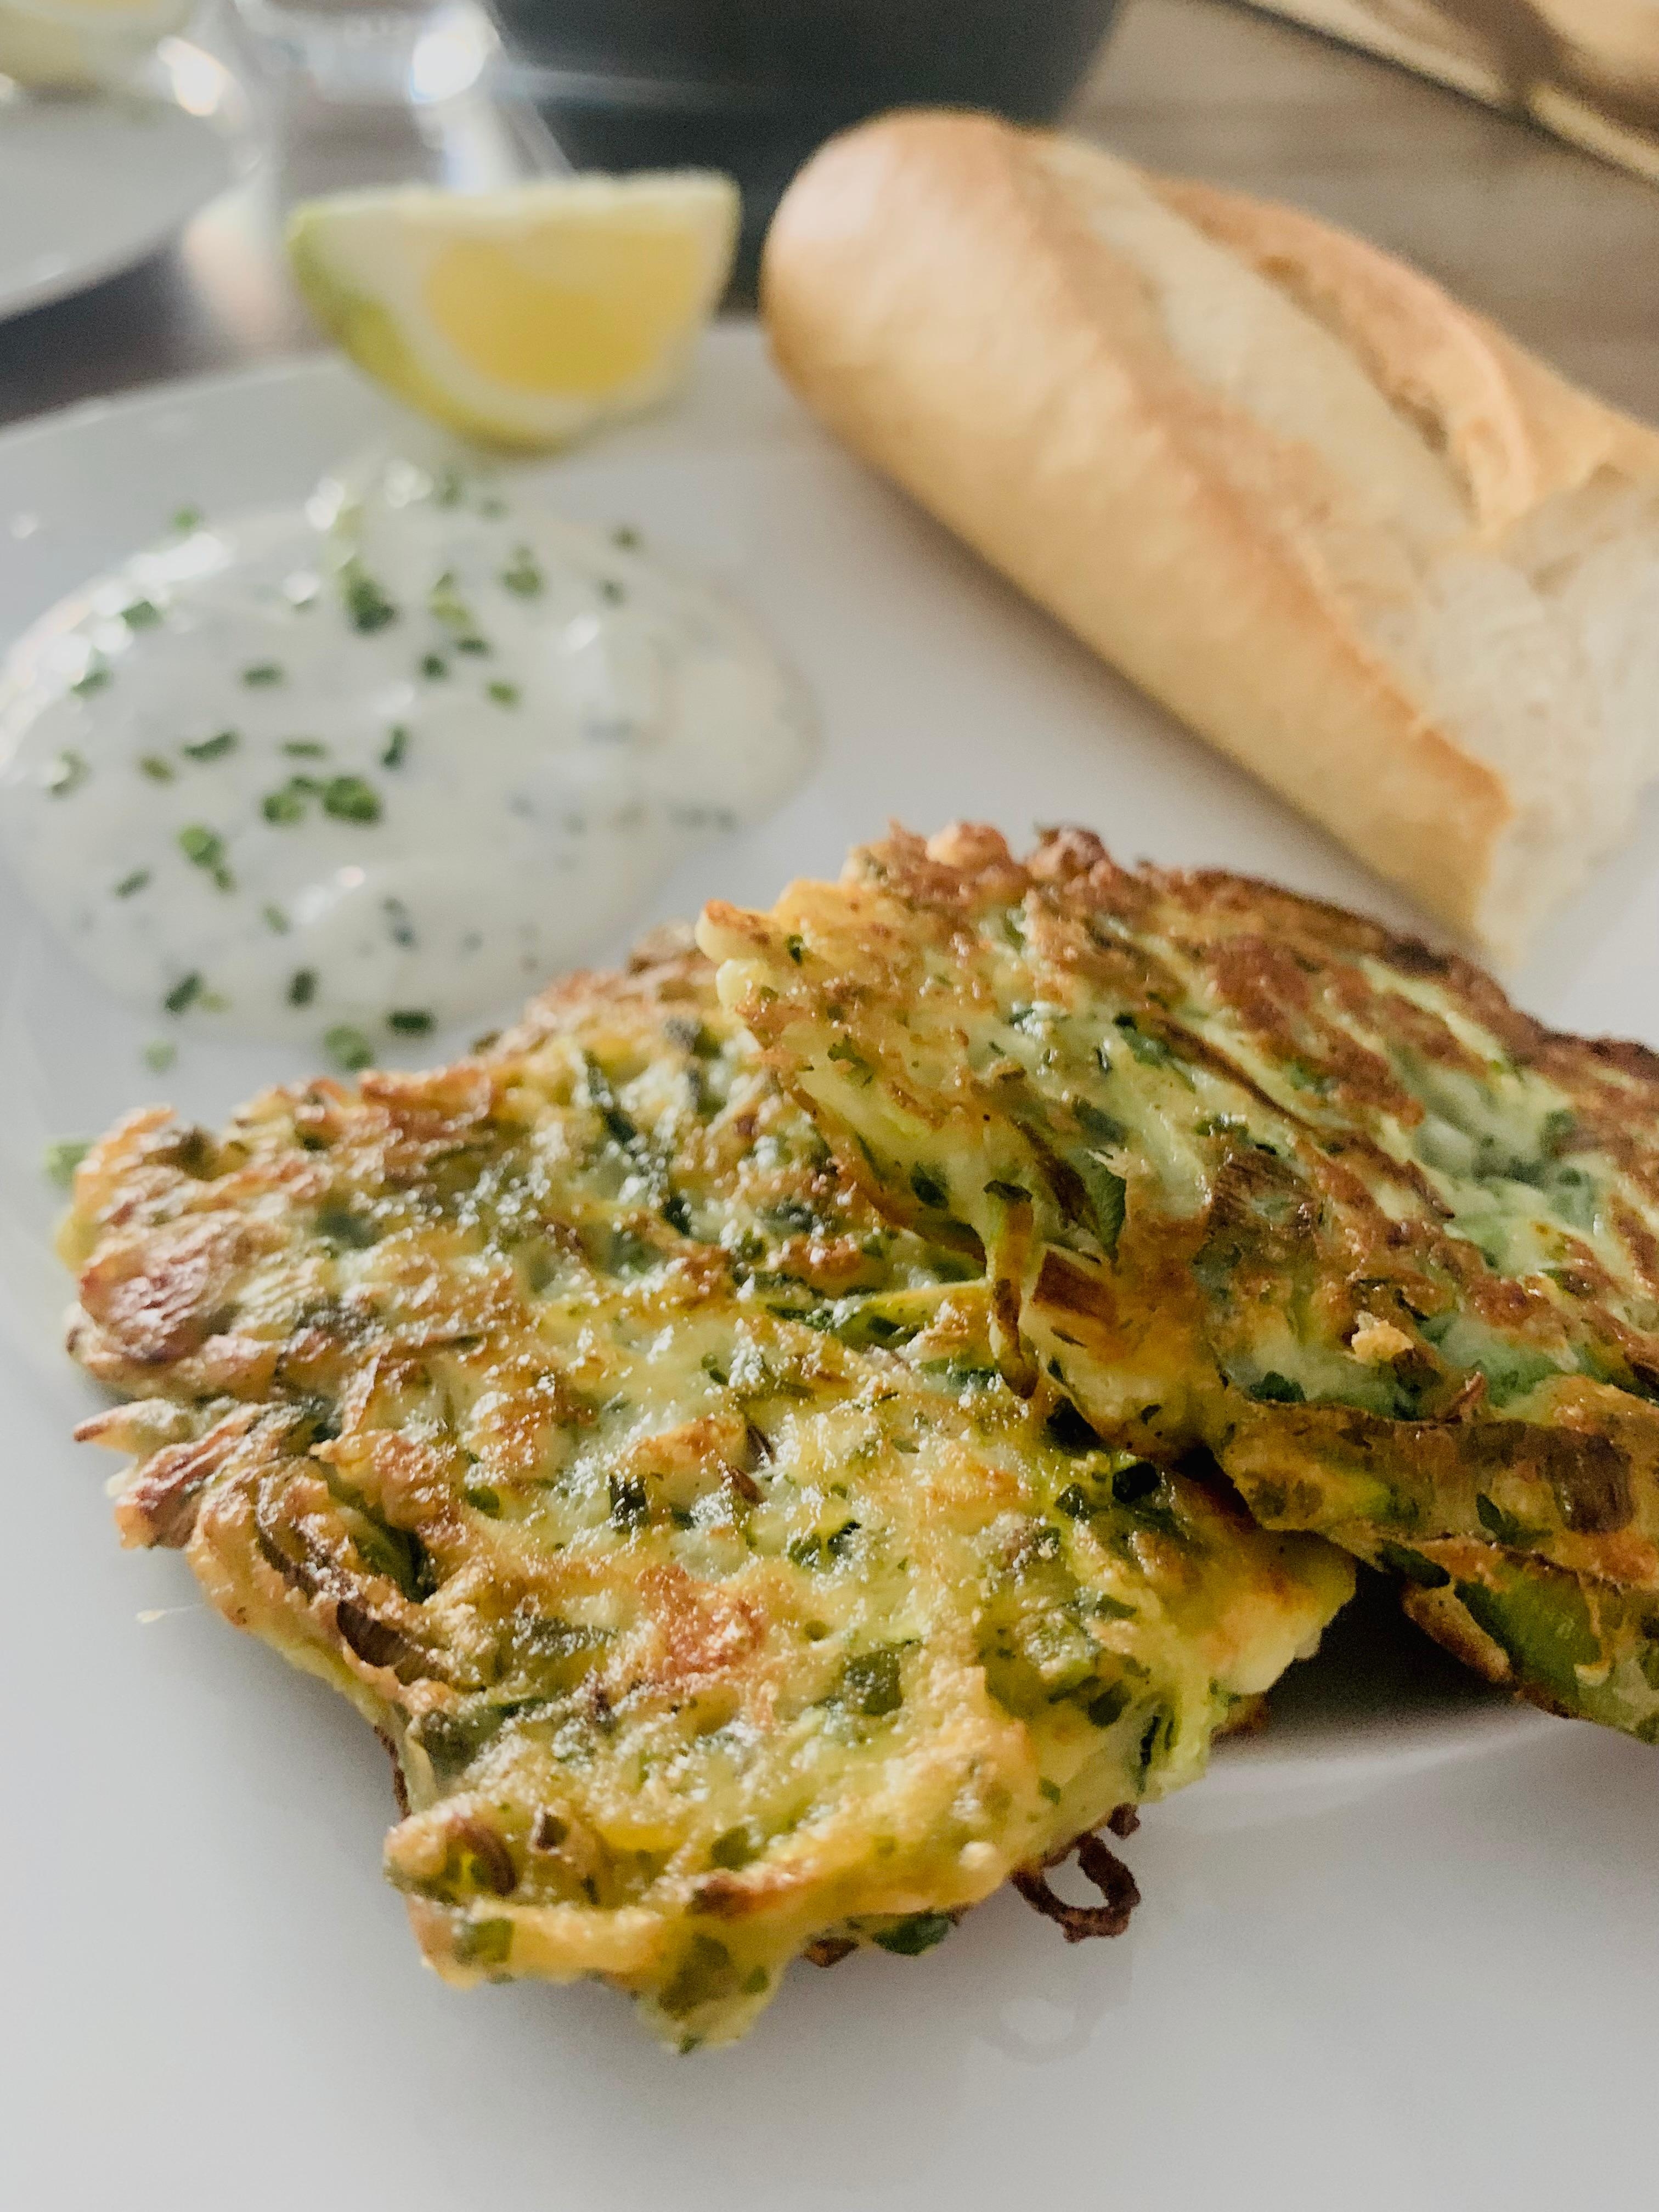 Griechisches Essen für Zuhause 
Zucchini mit BIOfeta 
#zucchini #puffer #food #kochen #teller #rezept #malteskitchen 